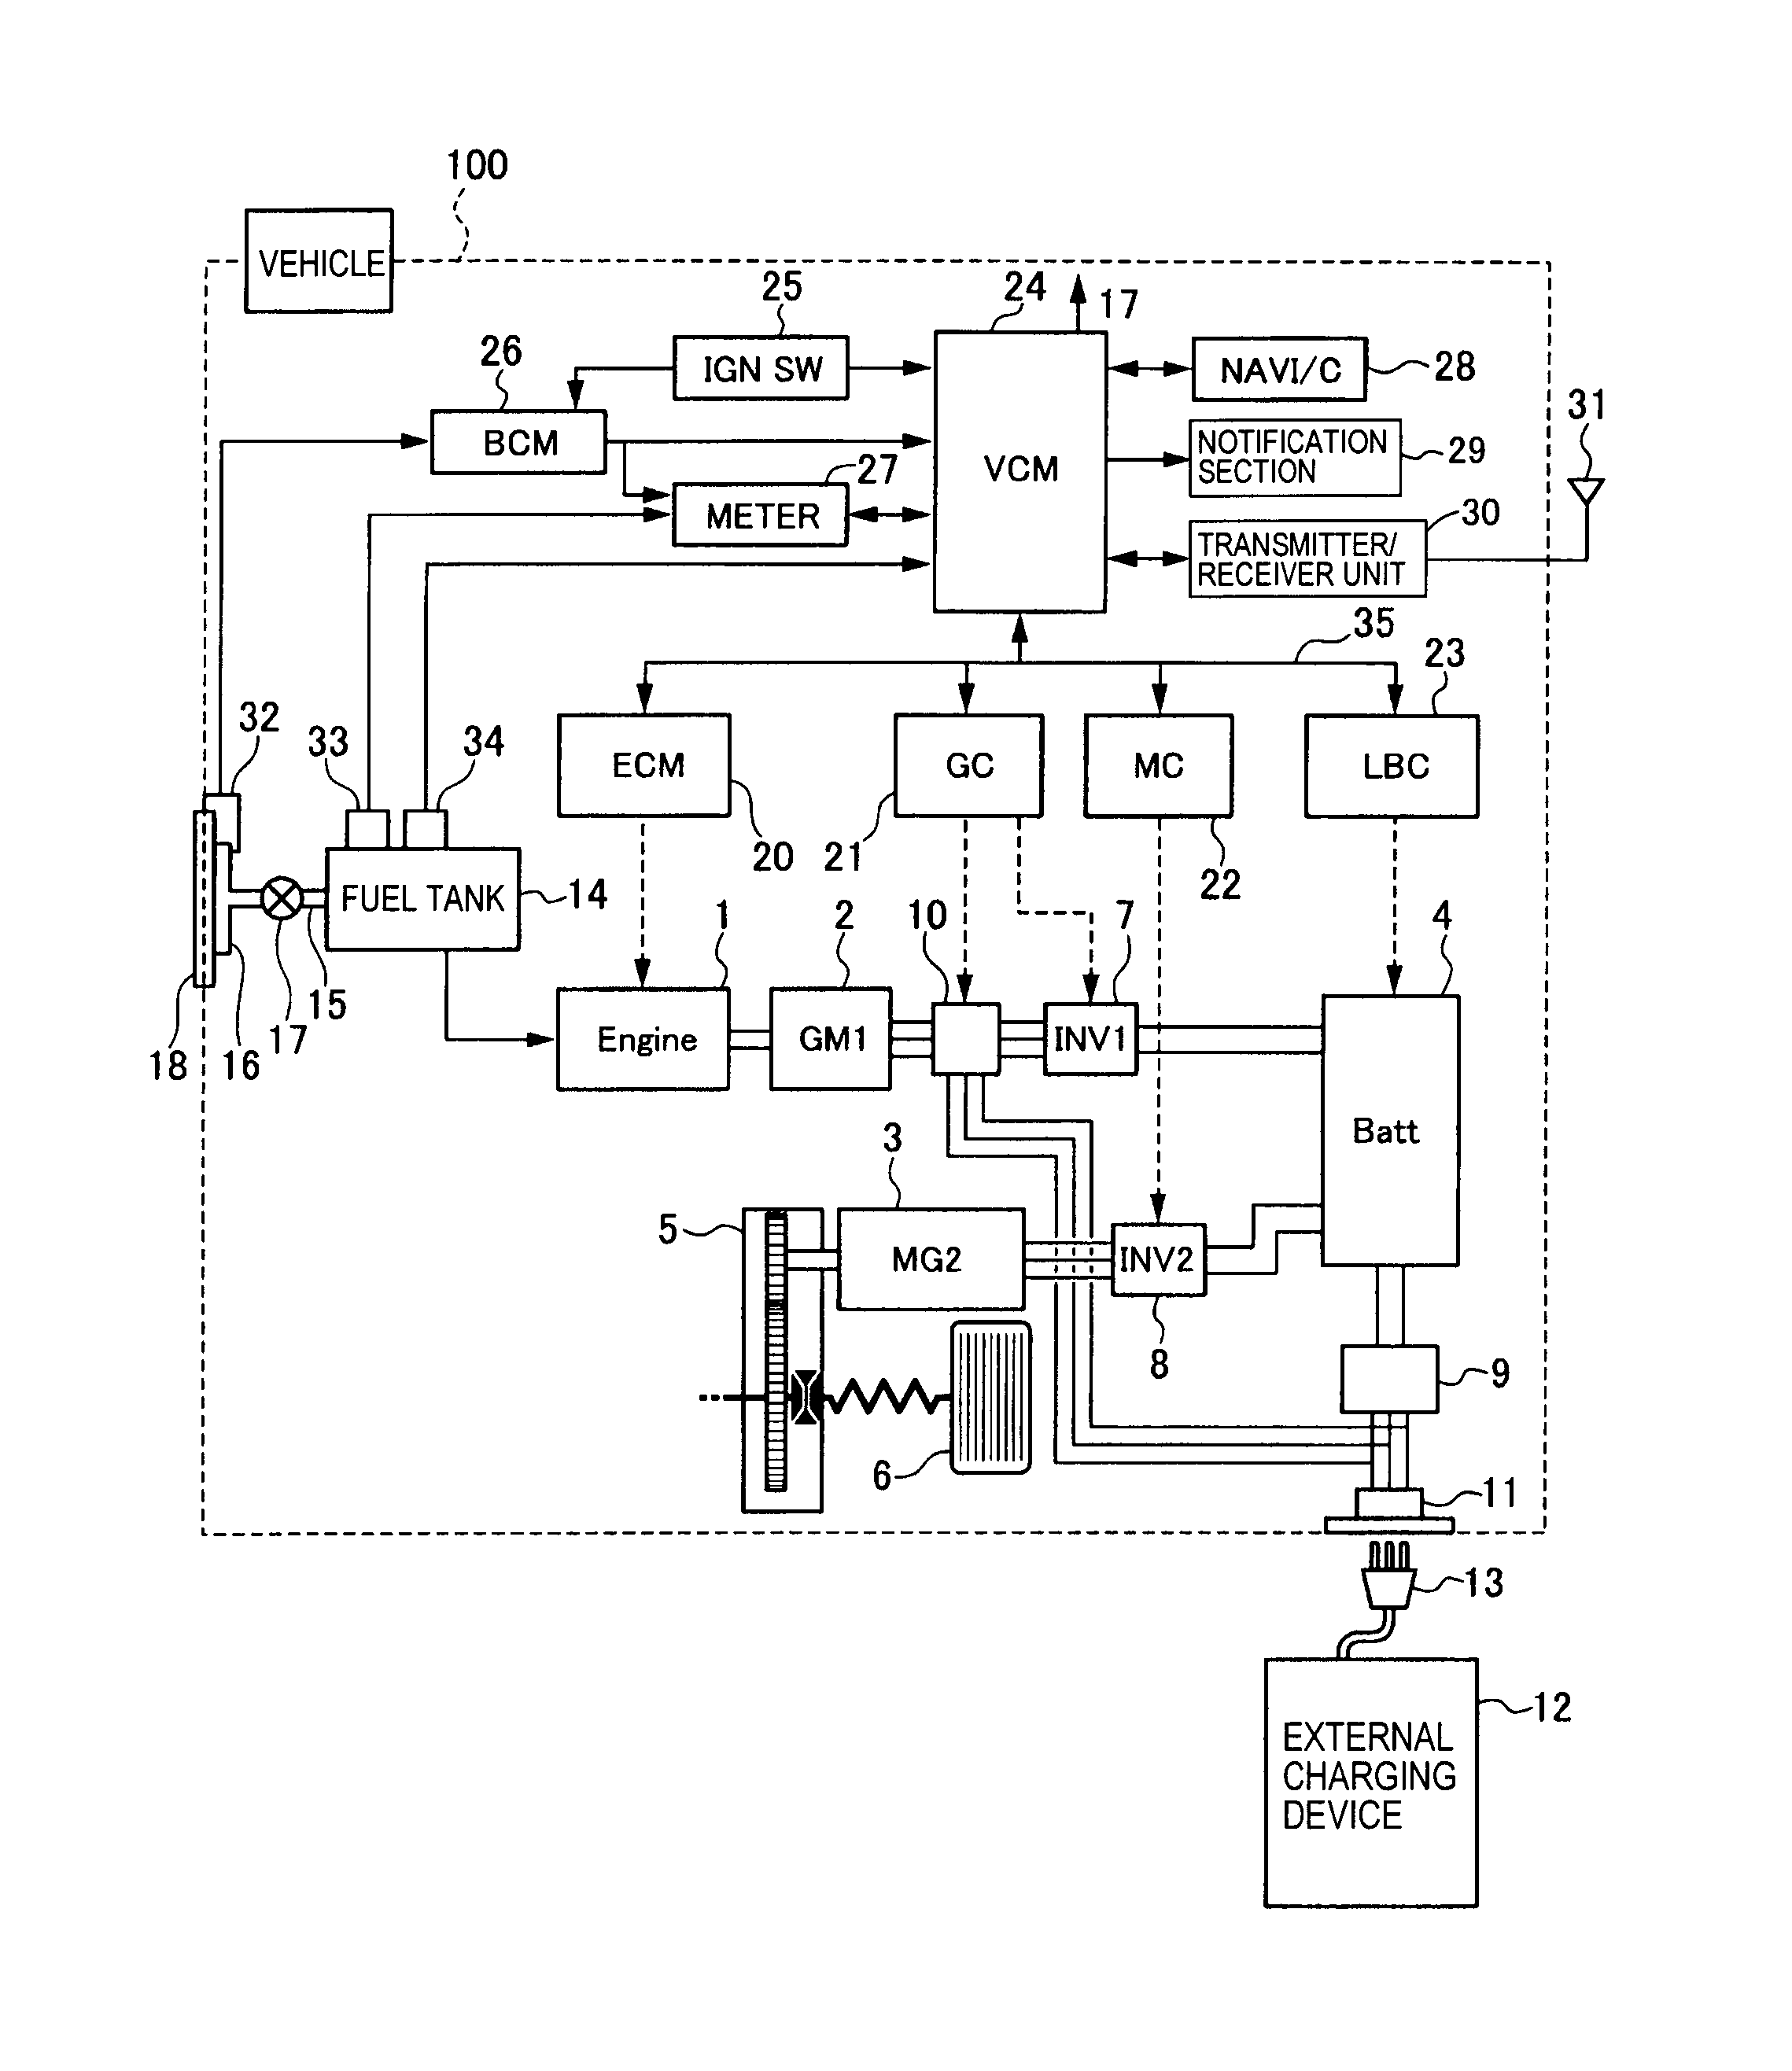 m&p 15-22 parts diagram